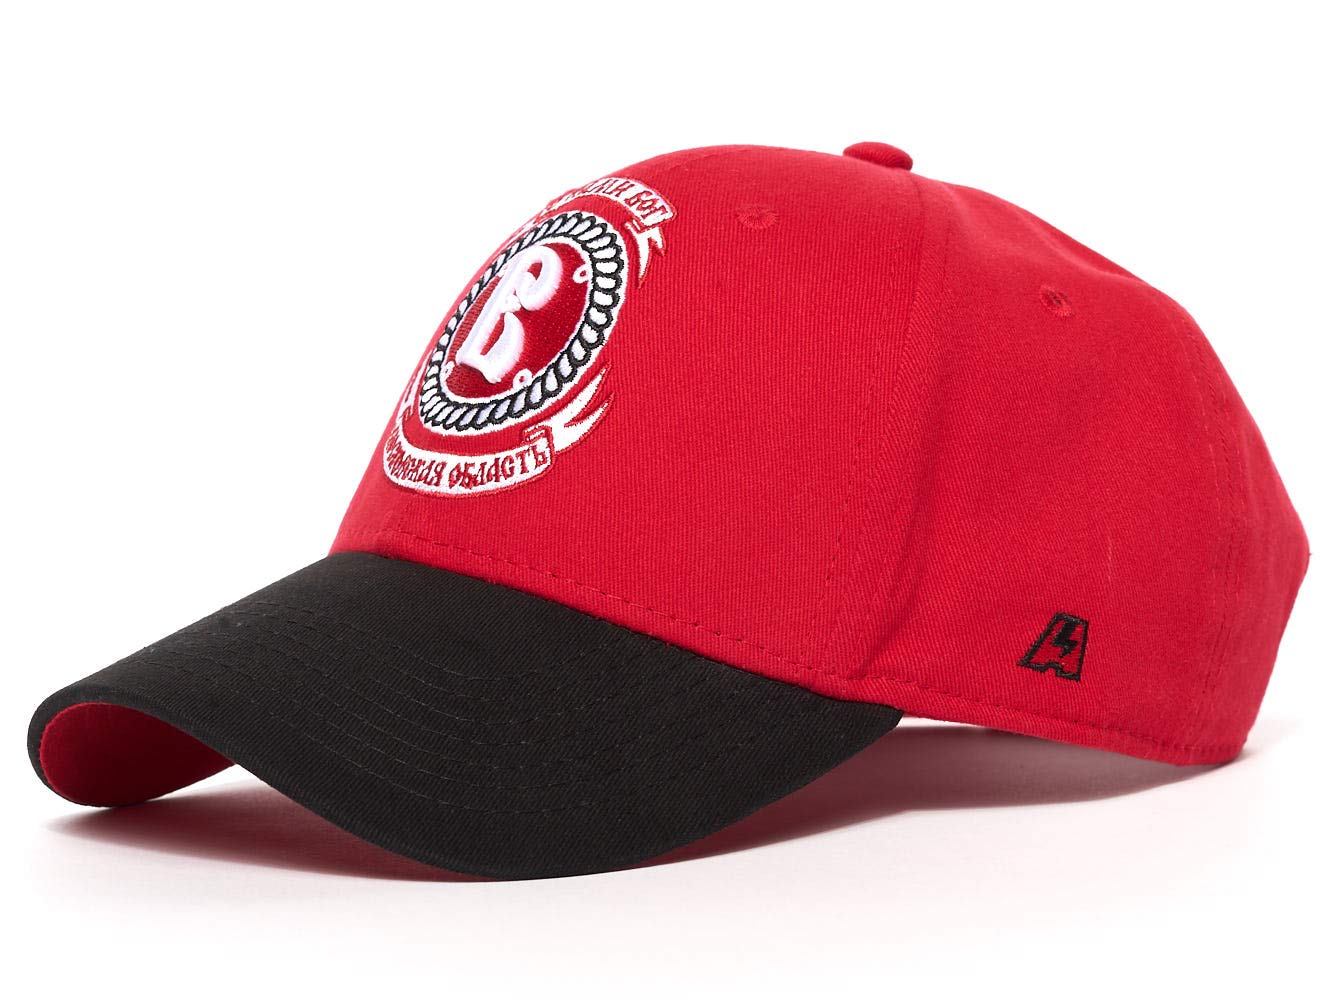 Vityaz Logo - Amazon.com : Atributika & Club HC Vityaz Podolsk, KHL Hockey Cap hat ...